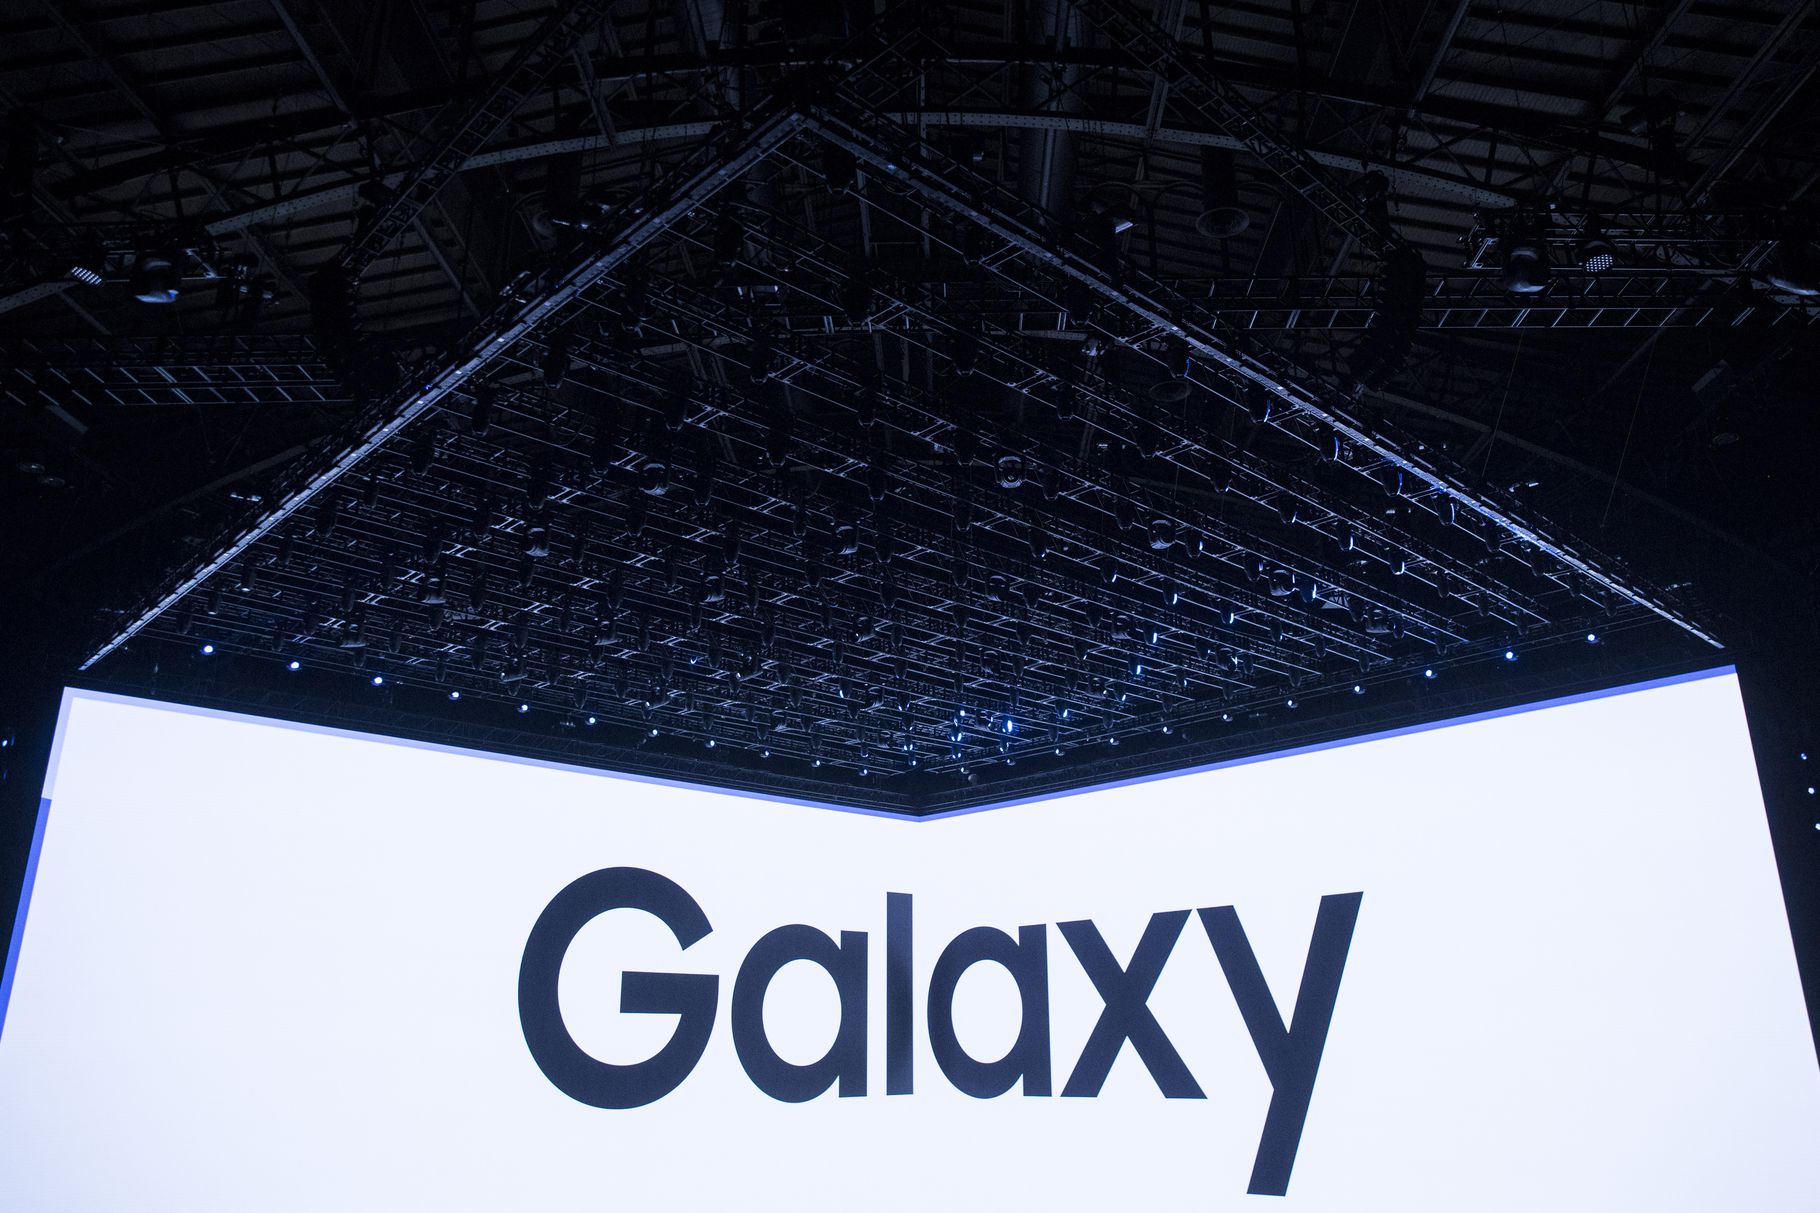 Samsung เตรียมเปิดตัวลำโพงอัจฉริยะราคาไม่ถึงหมื่นพร้อม Galaxy Note 9